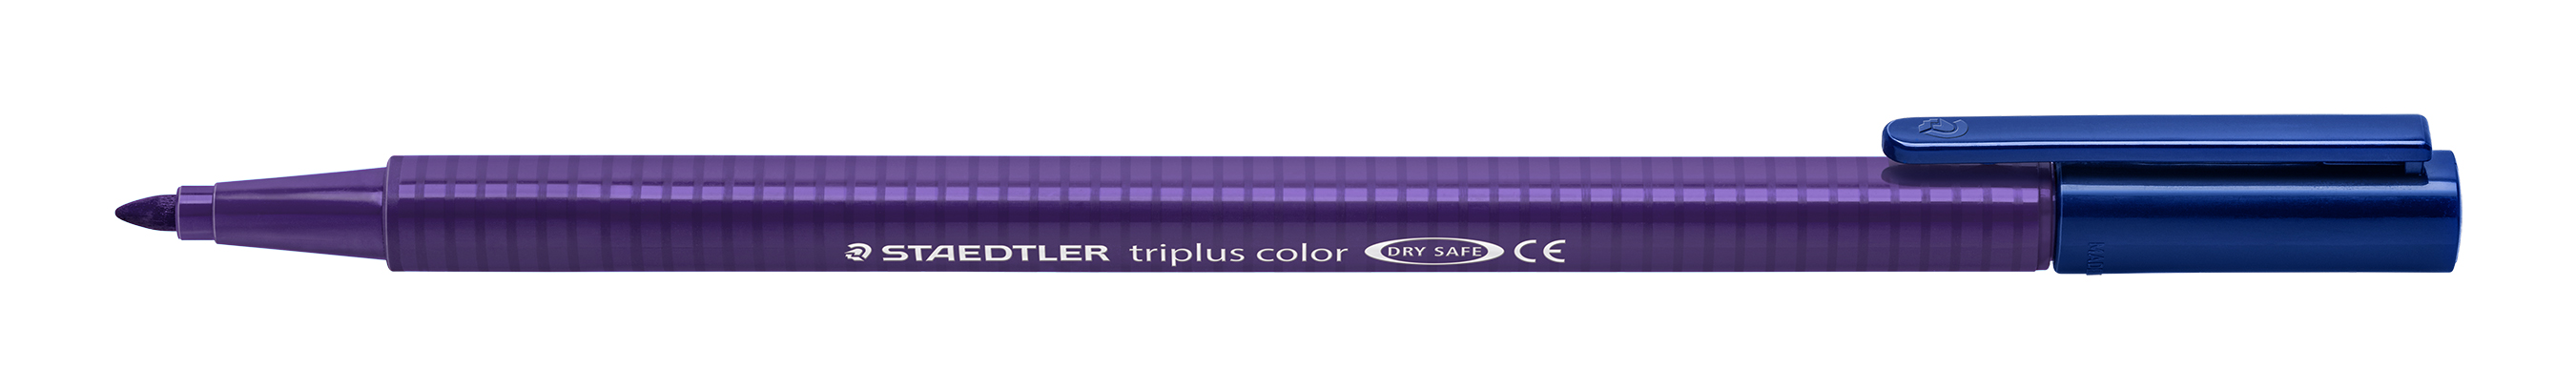 Fiberpen Triplus Color 1,0mm lilla, Staedtler 323-69, 20stk